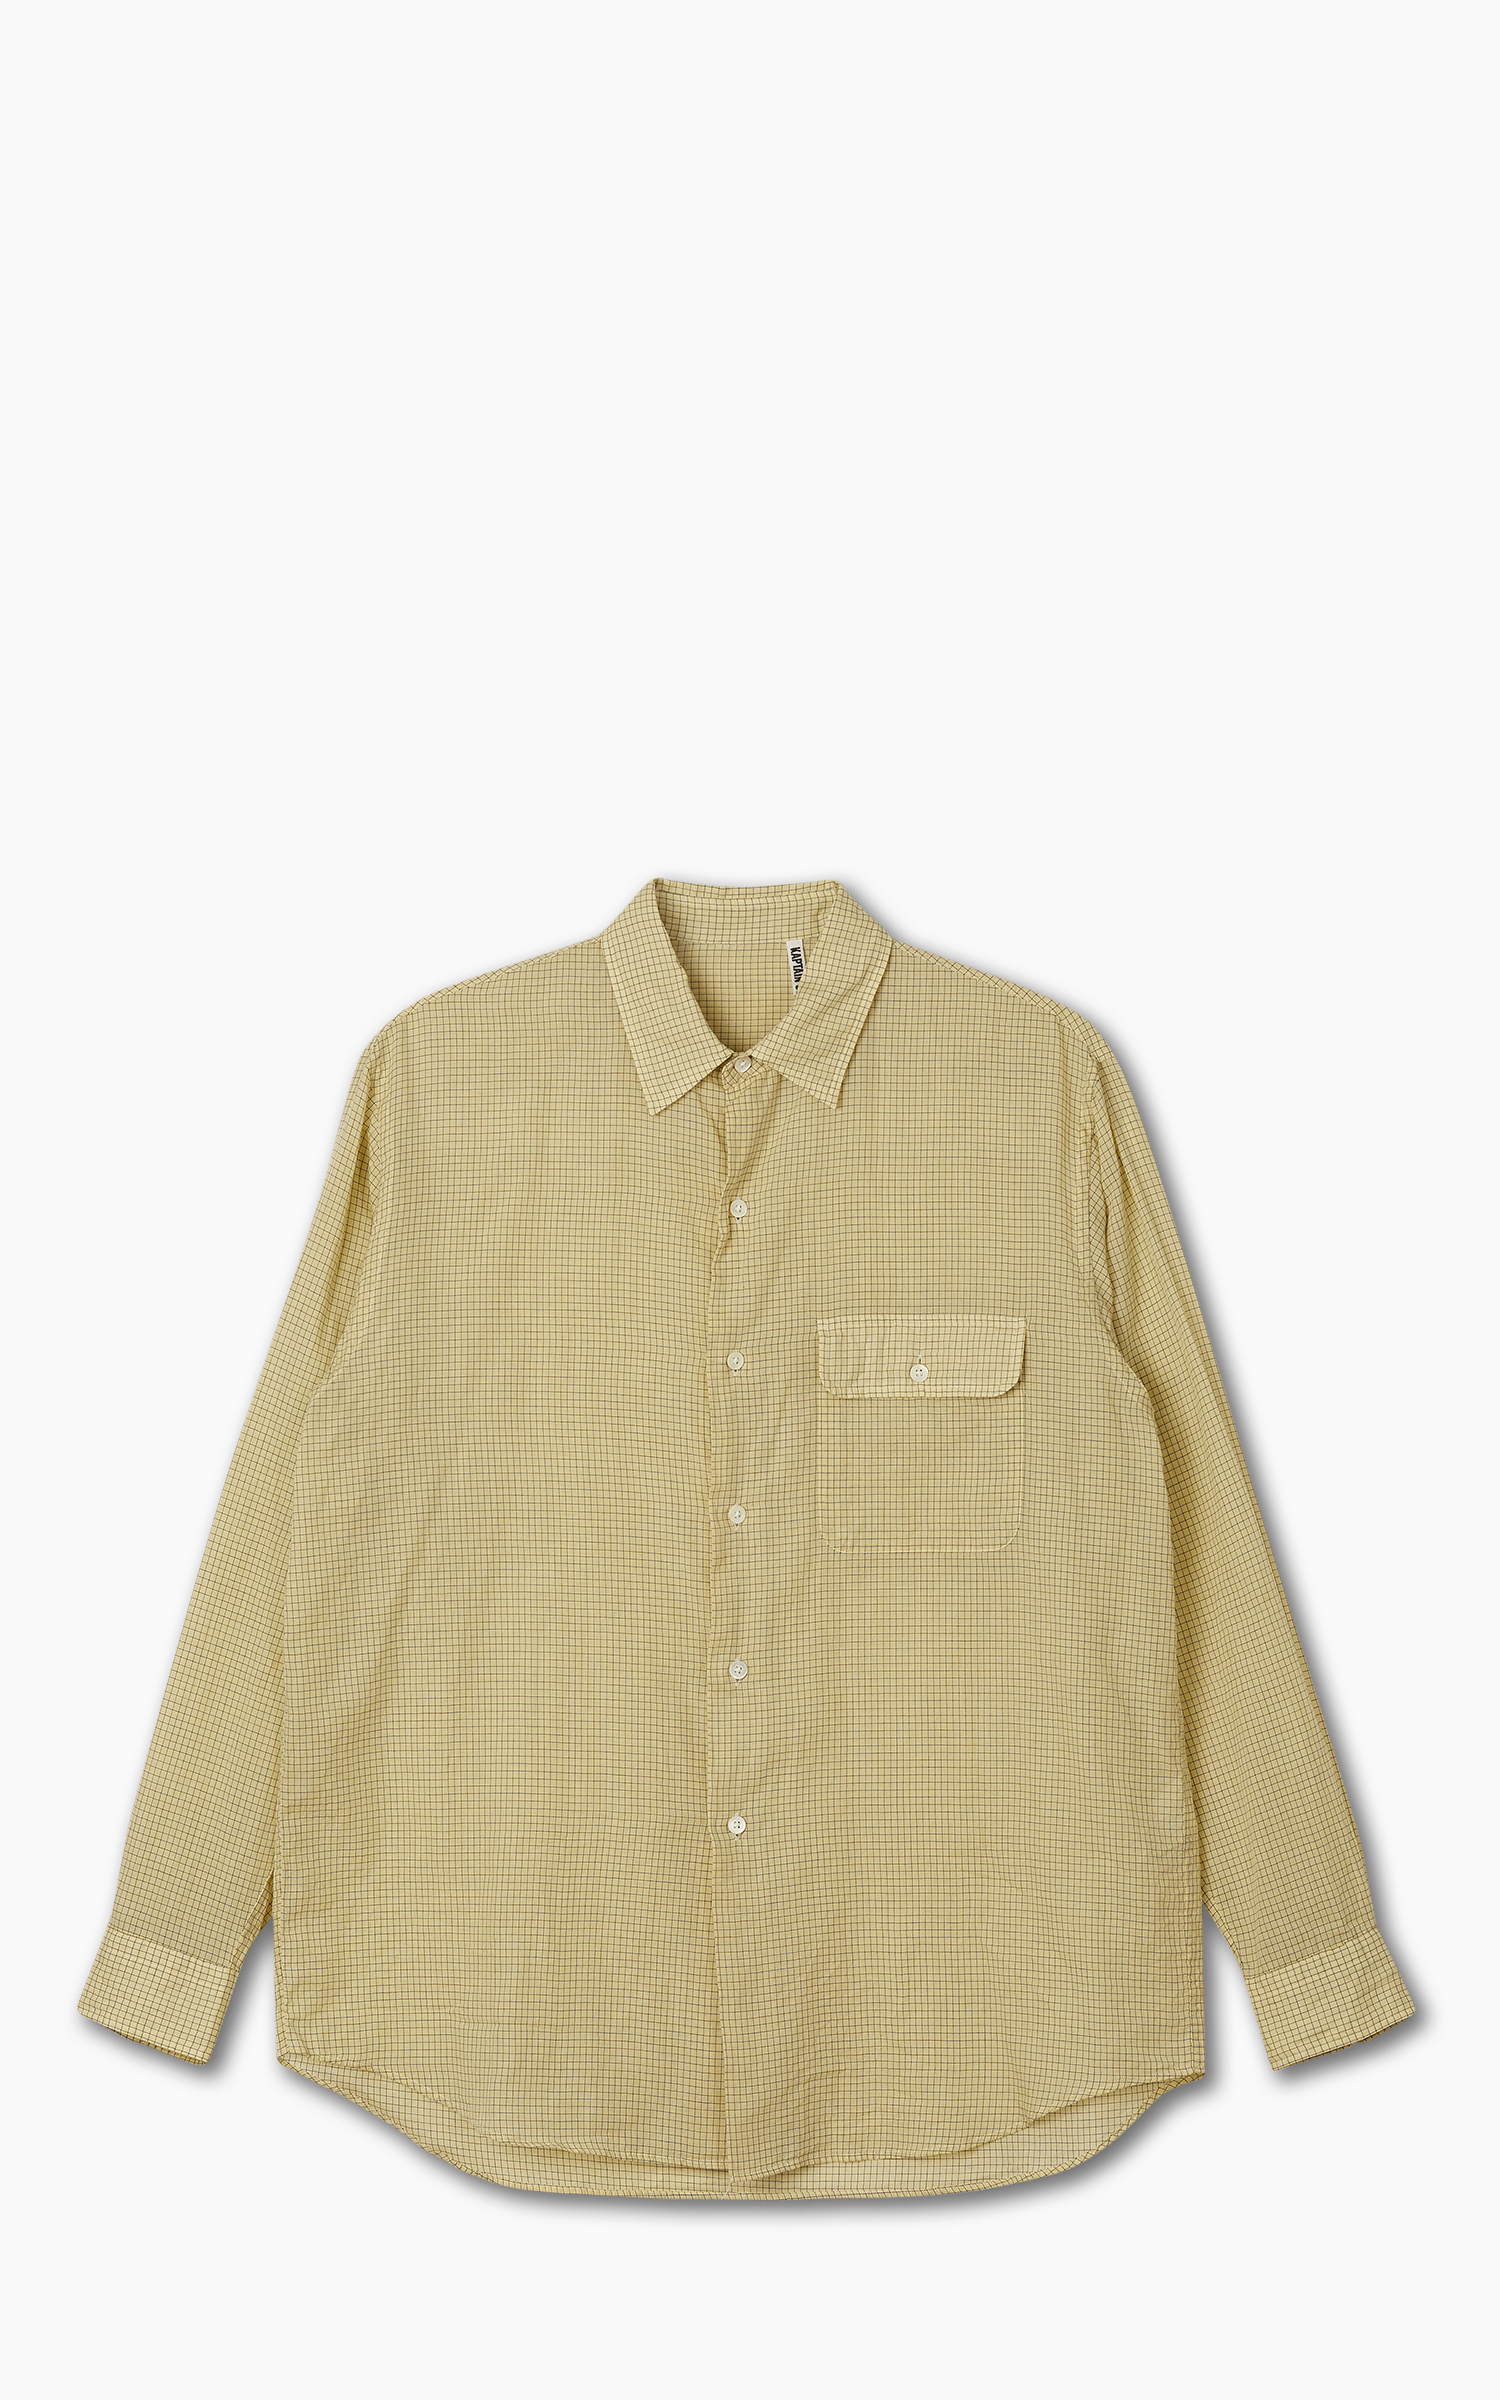 KAPTAIN SUNSHINE (キャプテンサンシャイン) CPO Shirt605cm